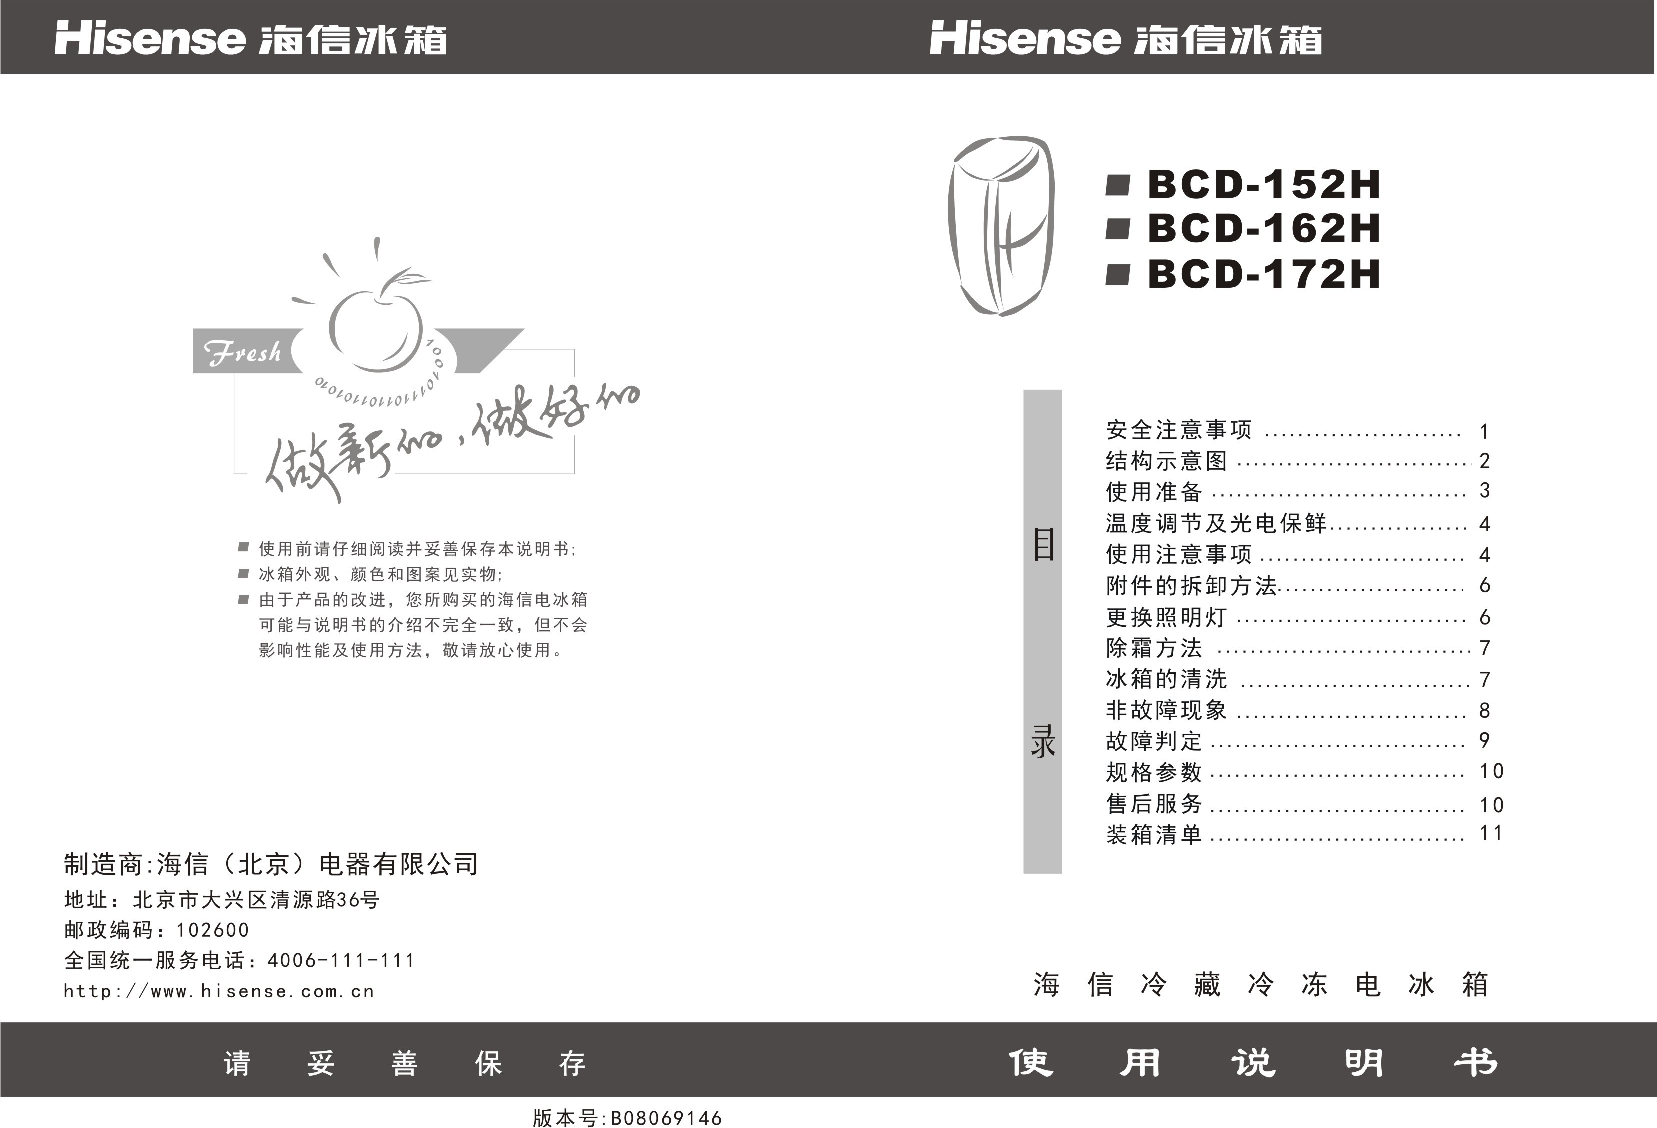 海信 Hisense BCD-162H 使用说明书 封面